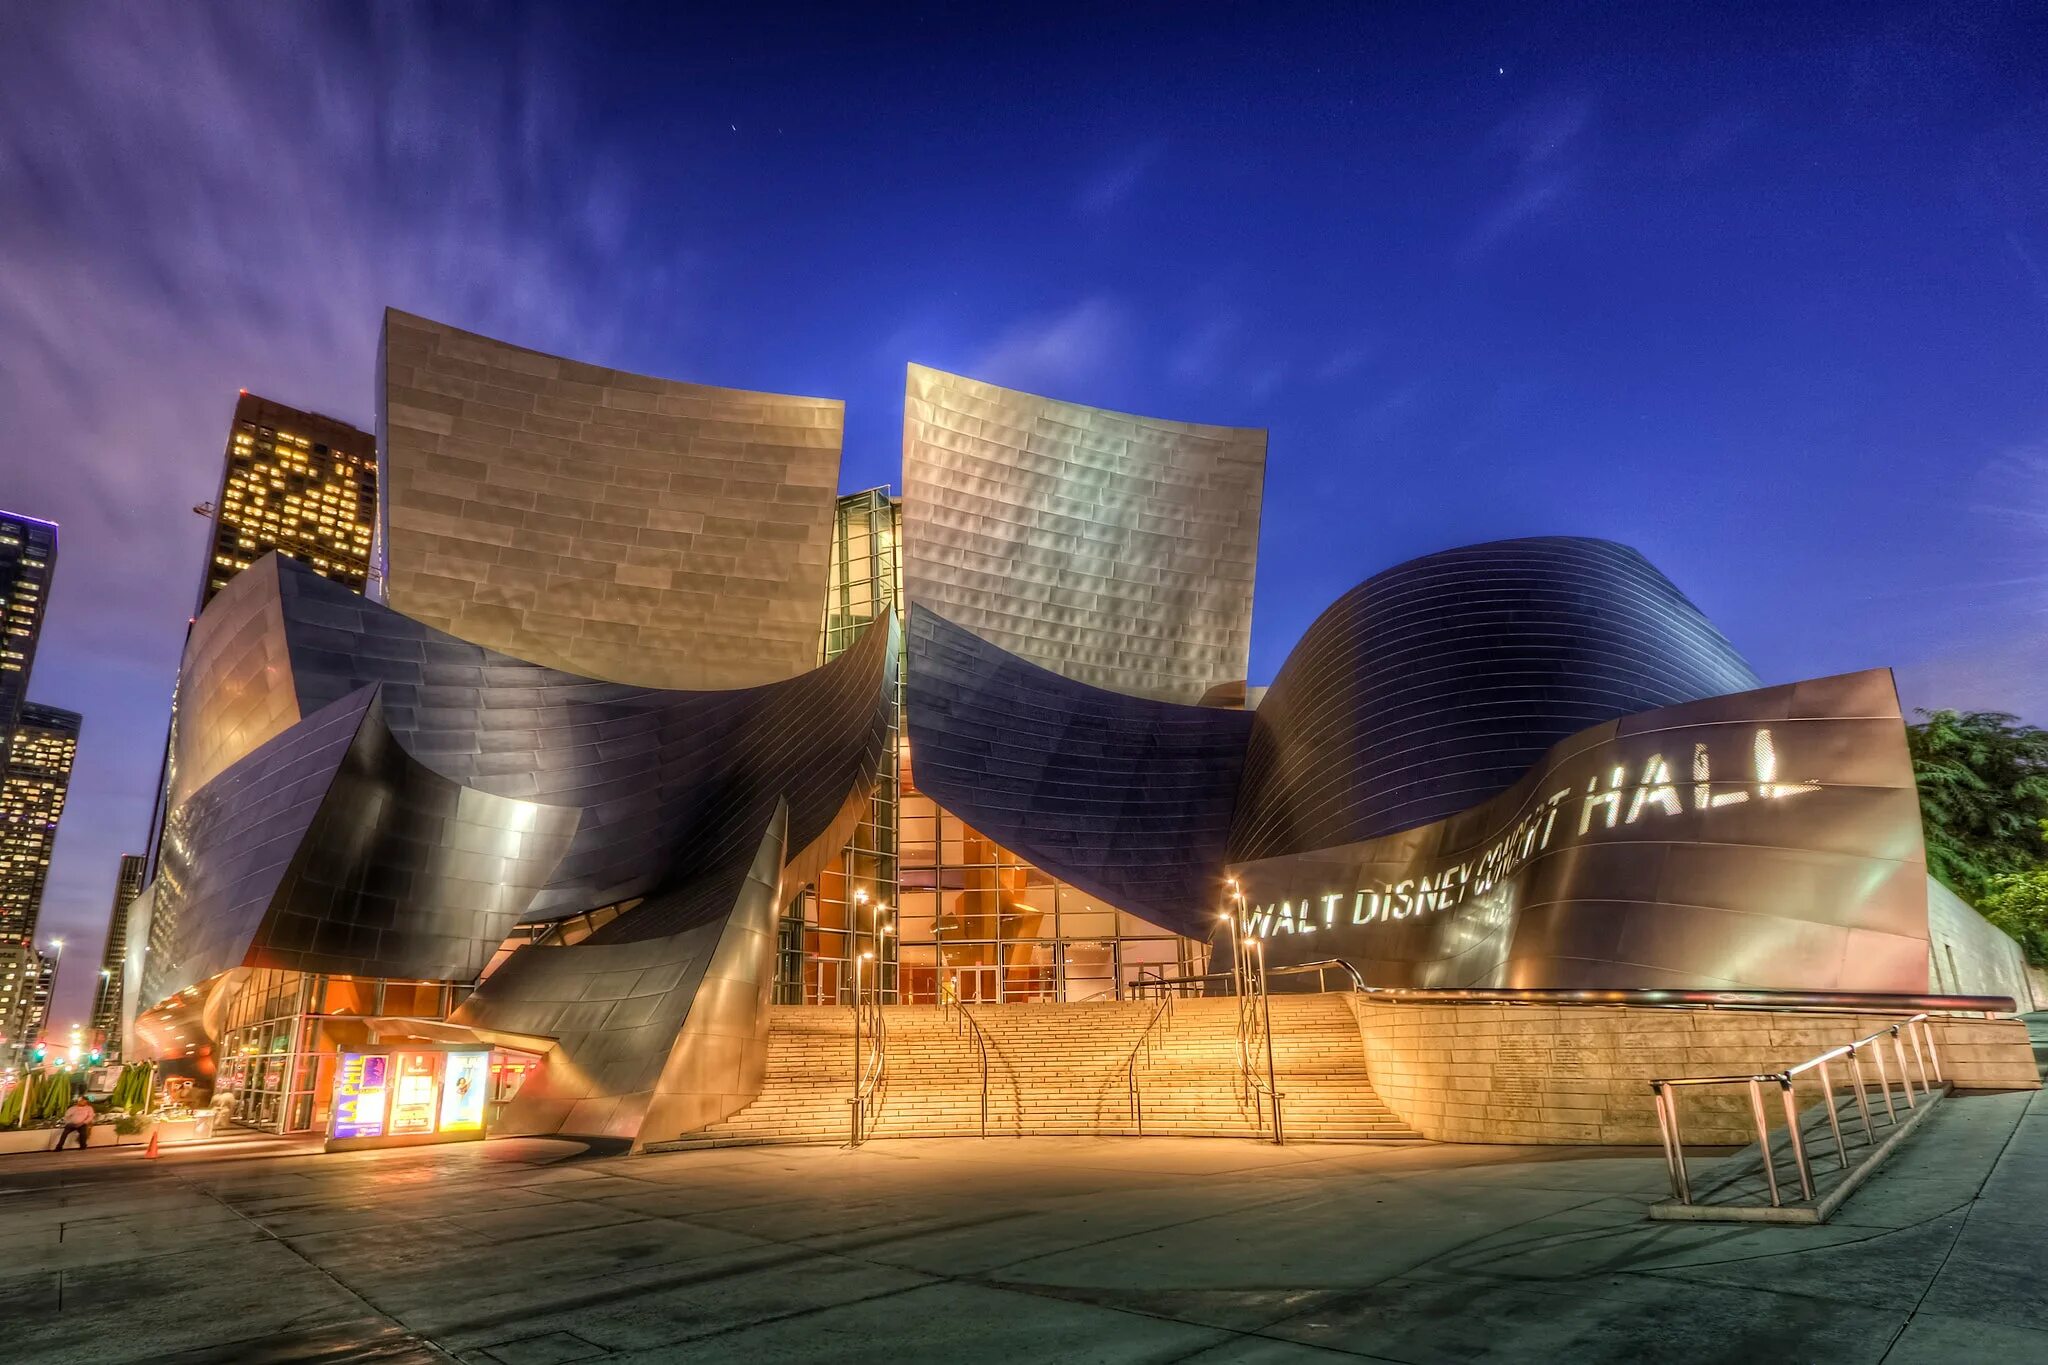 Концертный зал дисней. Лос Анджелес концертный зал Уолта Диснея. Концертный зал Уолта Диснея Фрэнка Гери, Лос-Анджелес, Калифорния. Концертный зал имени Уолта Диснея в Лос-Анджелесе (2003). Концертный зал имени Уолта Диснея Фрэнк Гери.